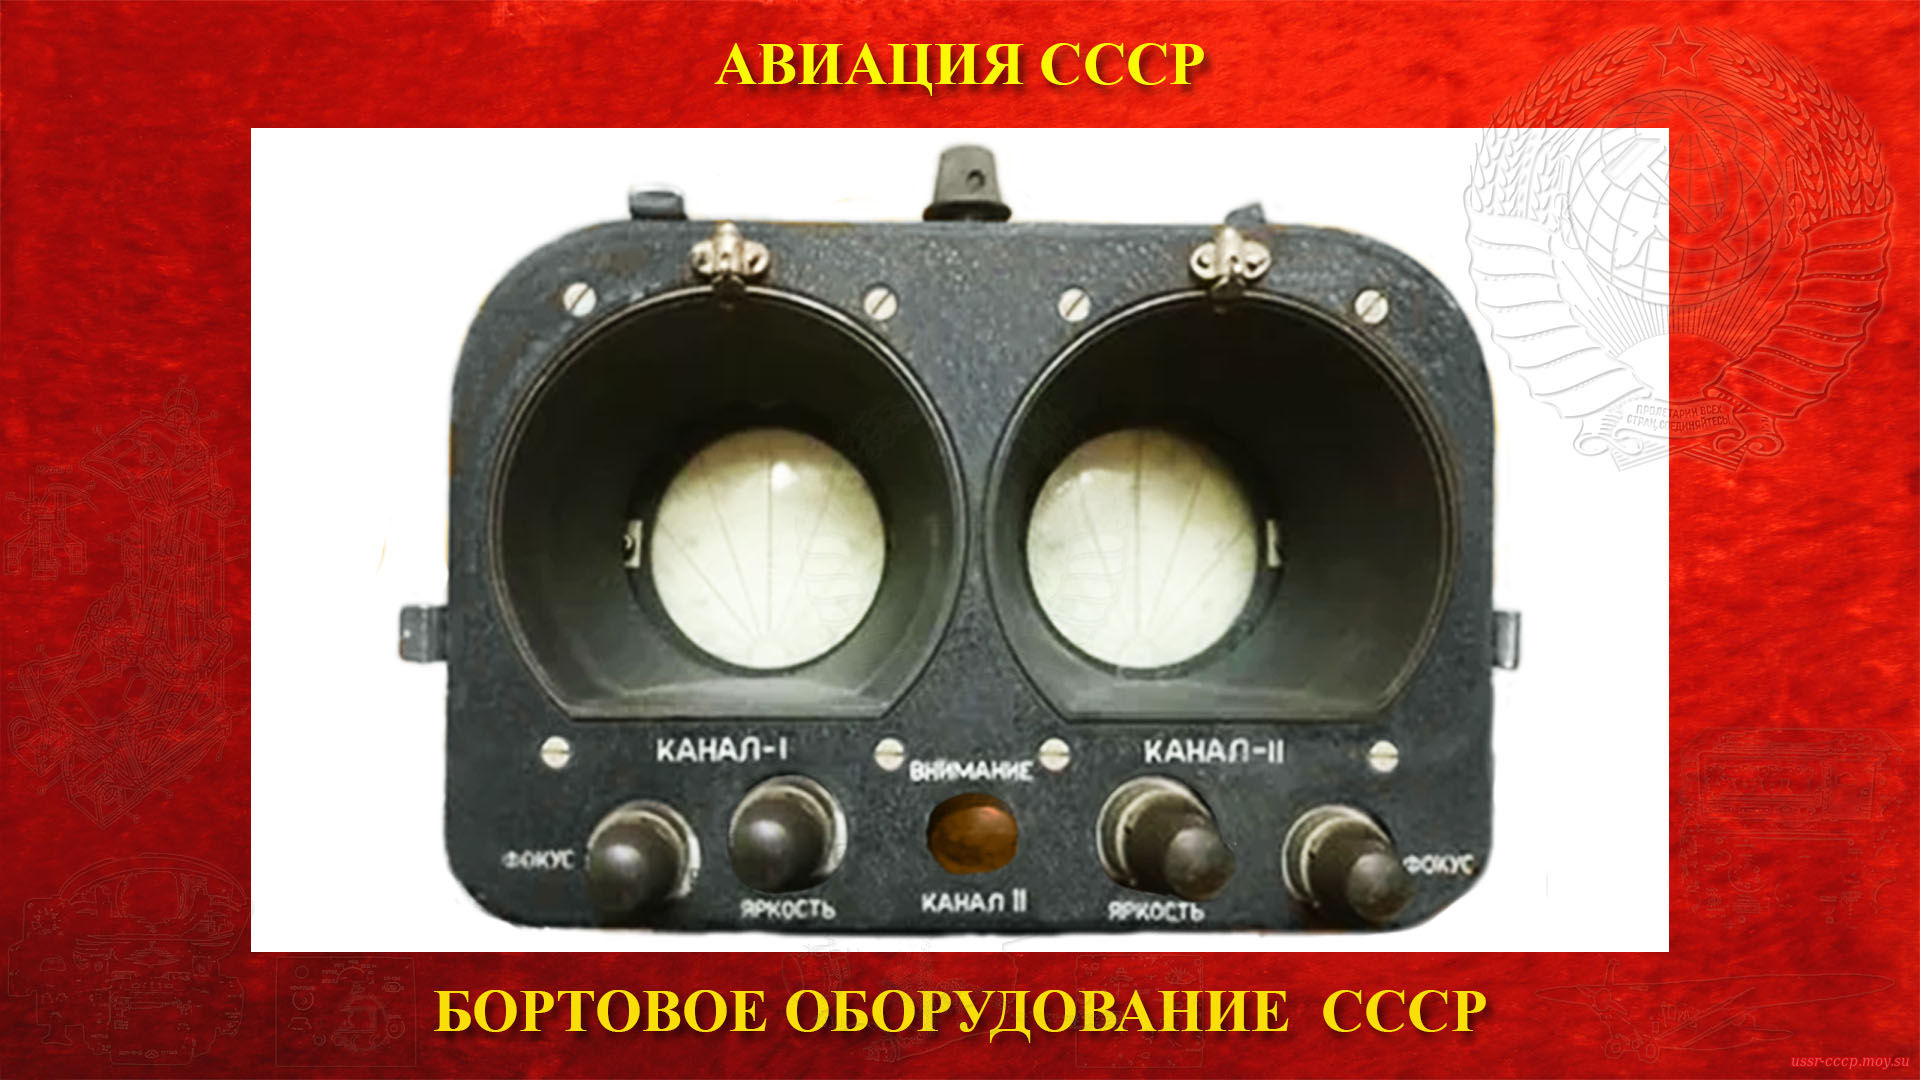 РПСН-2 — Радиолокационная станция предупреждения столкновений и навигации (повествование)